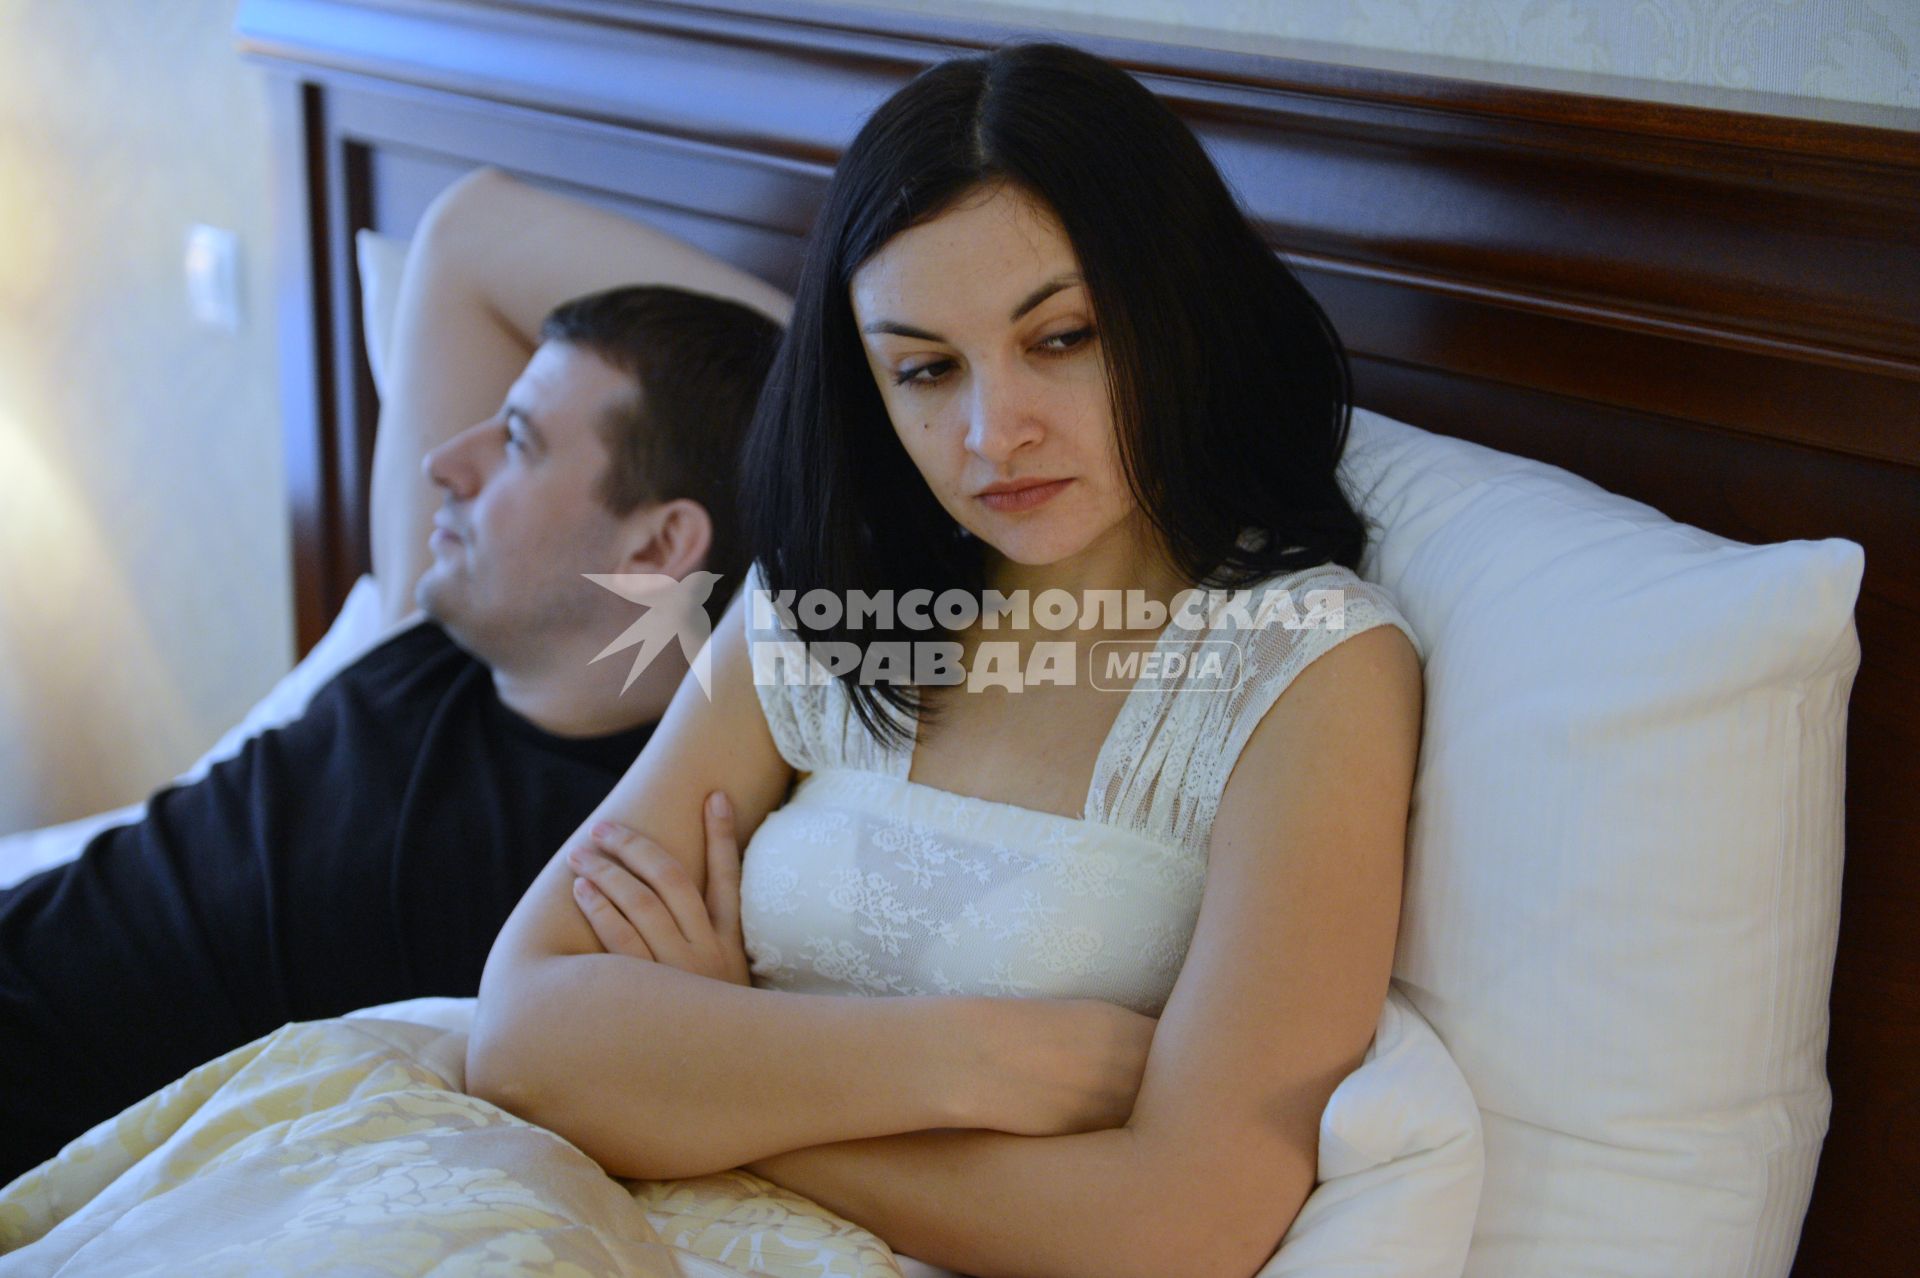 Отношения мужчины и женщины. На снимке: мужчина и женщина в постели.